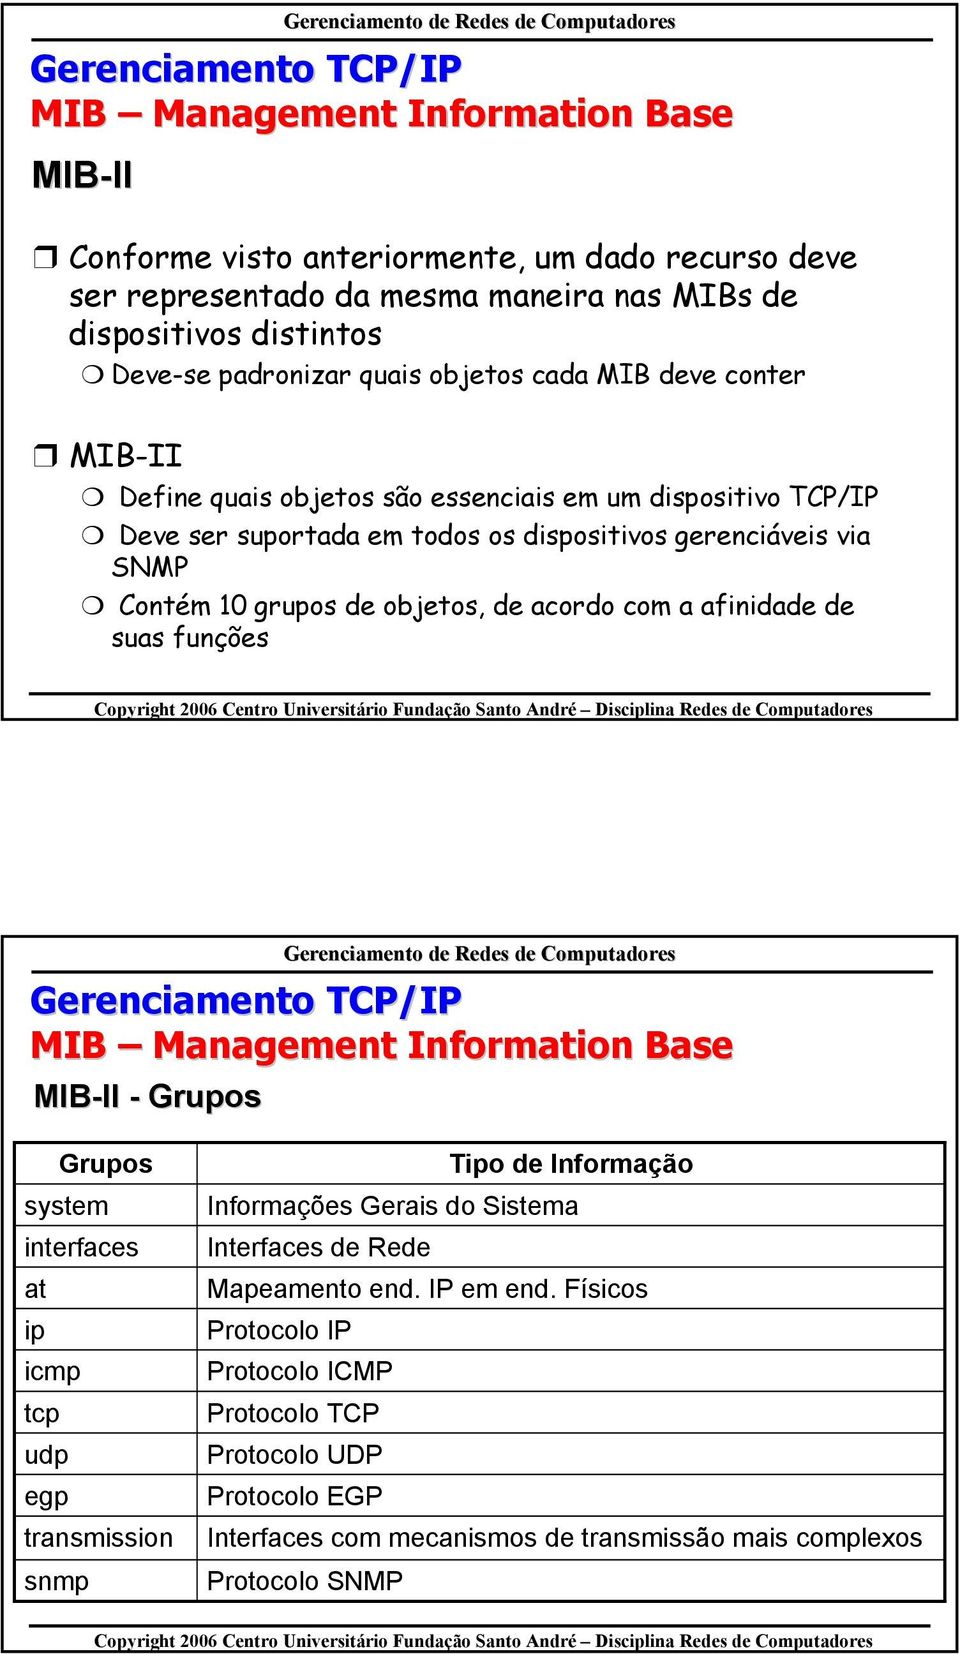 de acordo com a afinidade de suas funções MIB Management Information Base MIB-II II - Grupos Grupos system interfaces at ip icmp tcp udp egp transmission snmp Tipo de Informação Informações